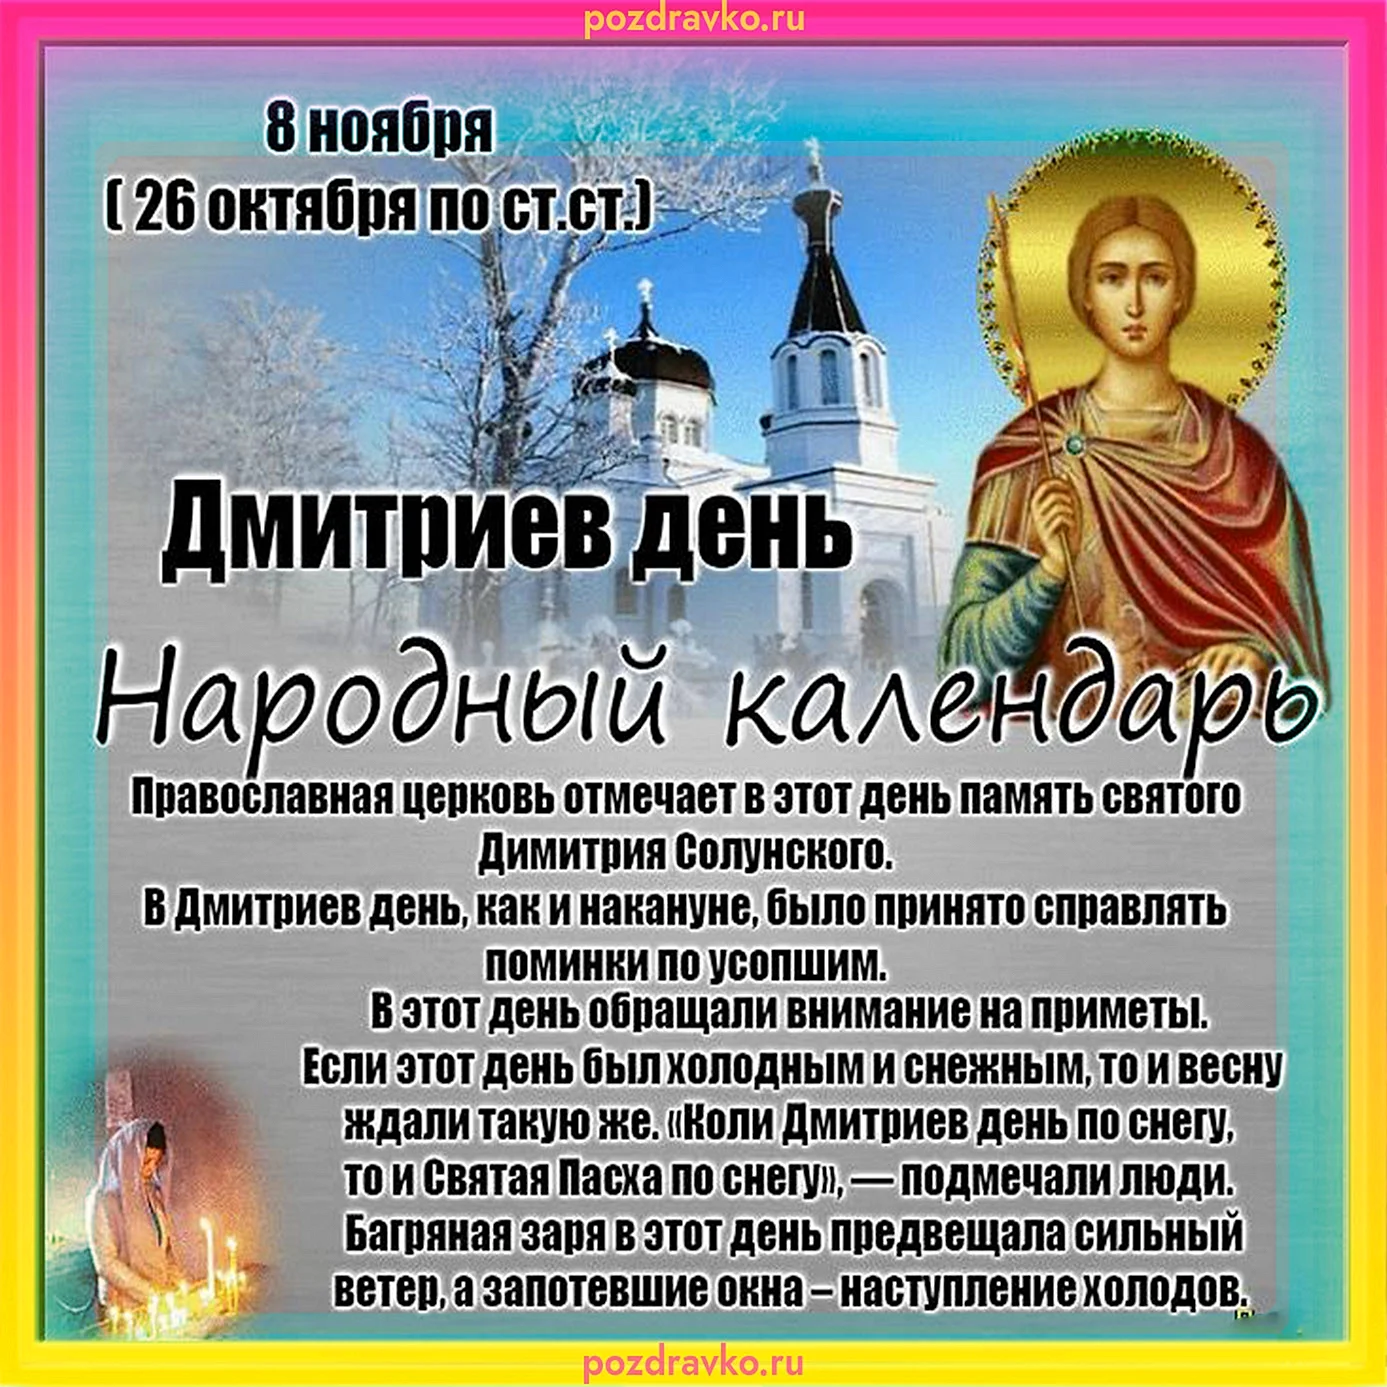 8 Ноября праздник Дмитриев день